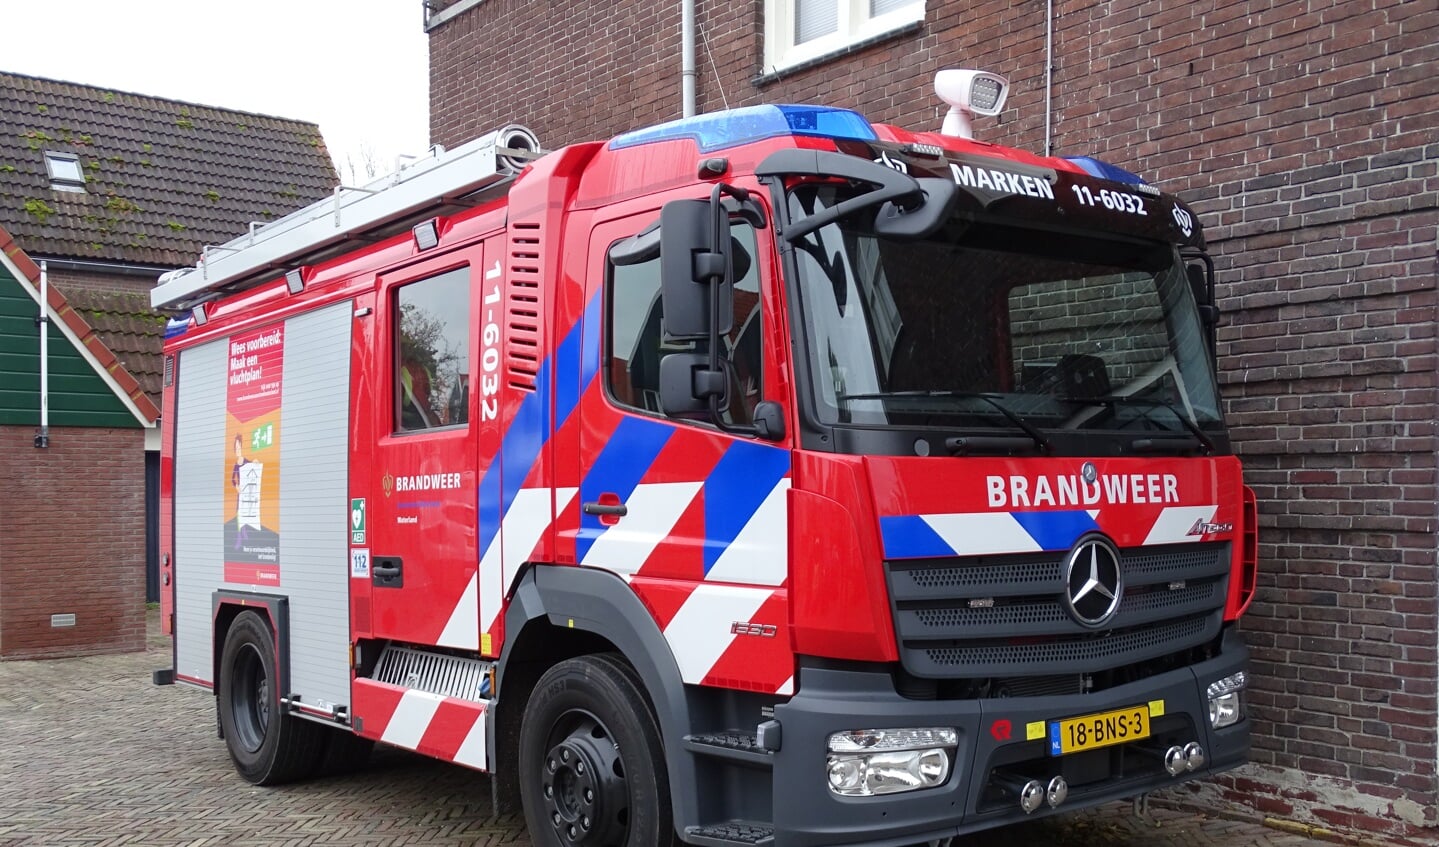 Afgelopen vrijdag werd het nieuwe brandweervoertuig van Marken gepresenteerd. 